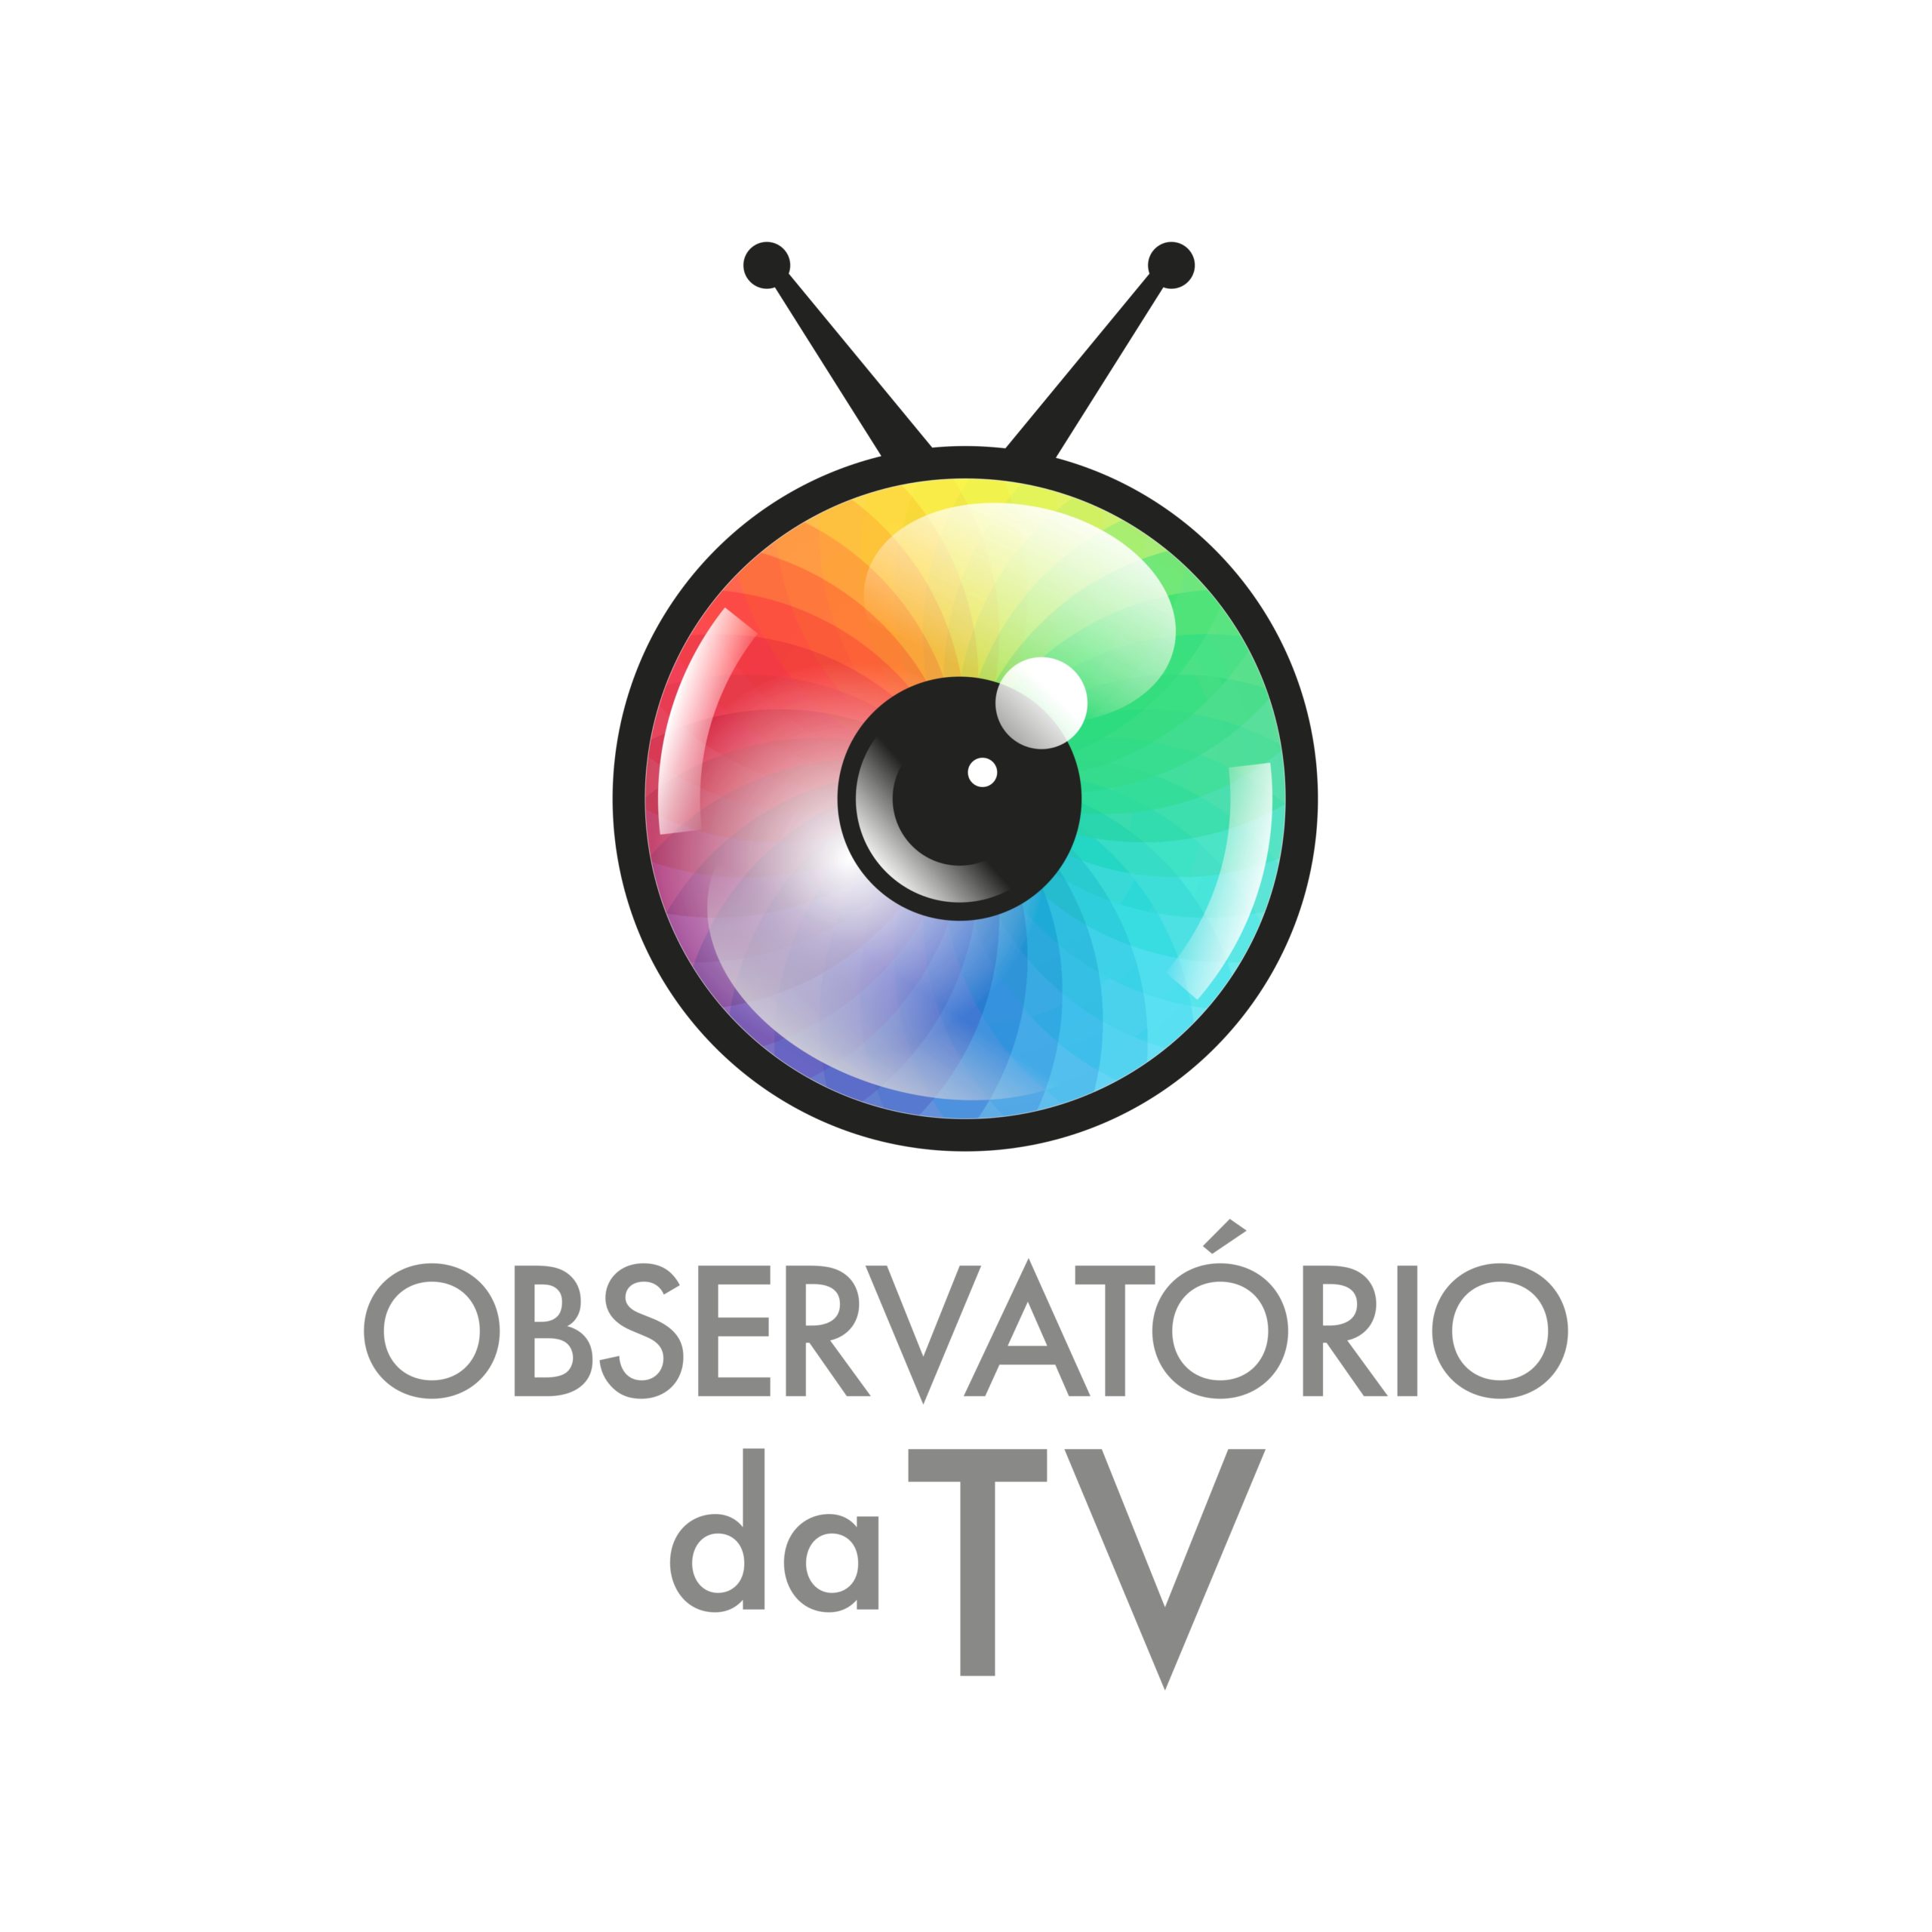 Observatório da tv - uol